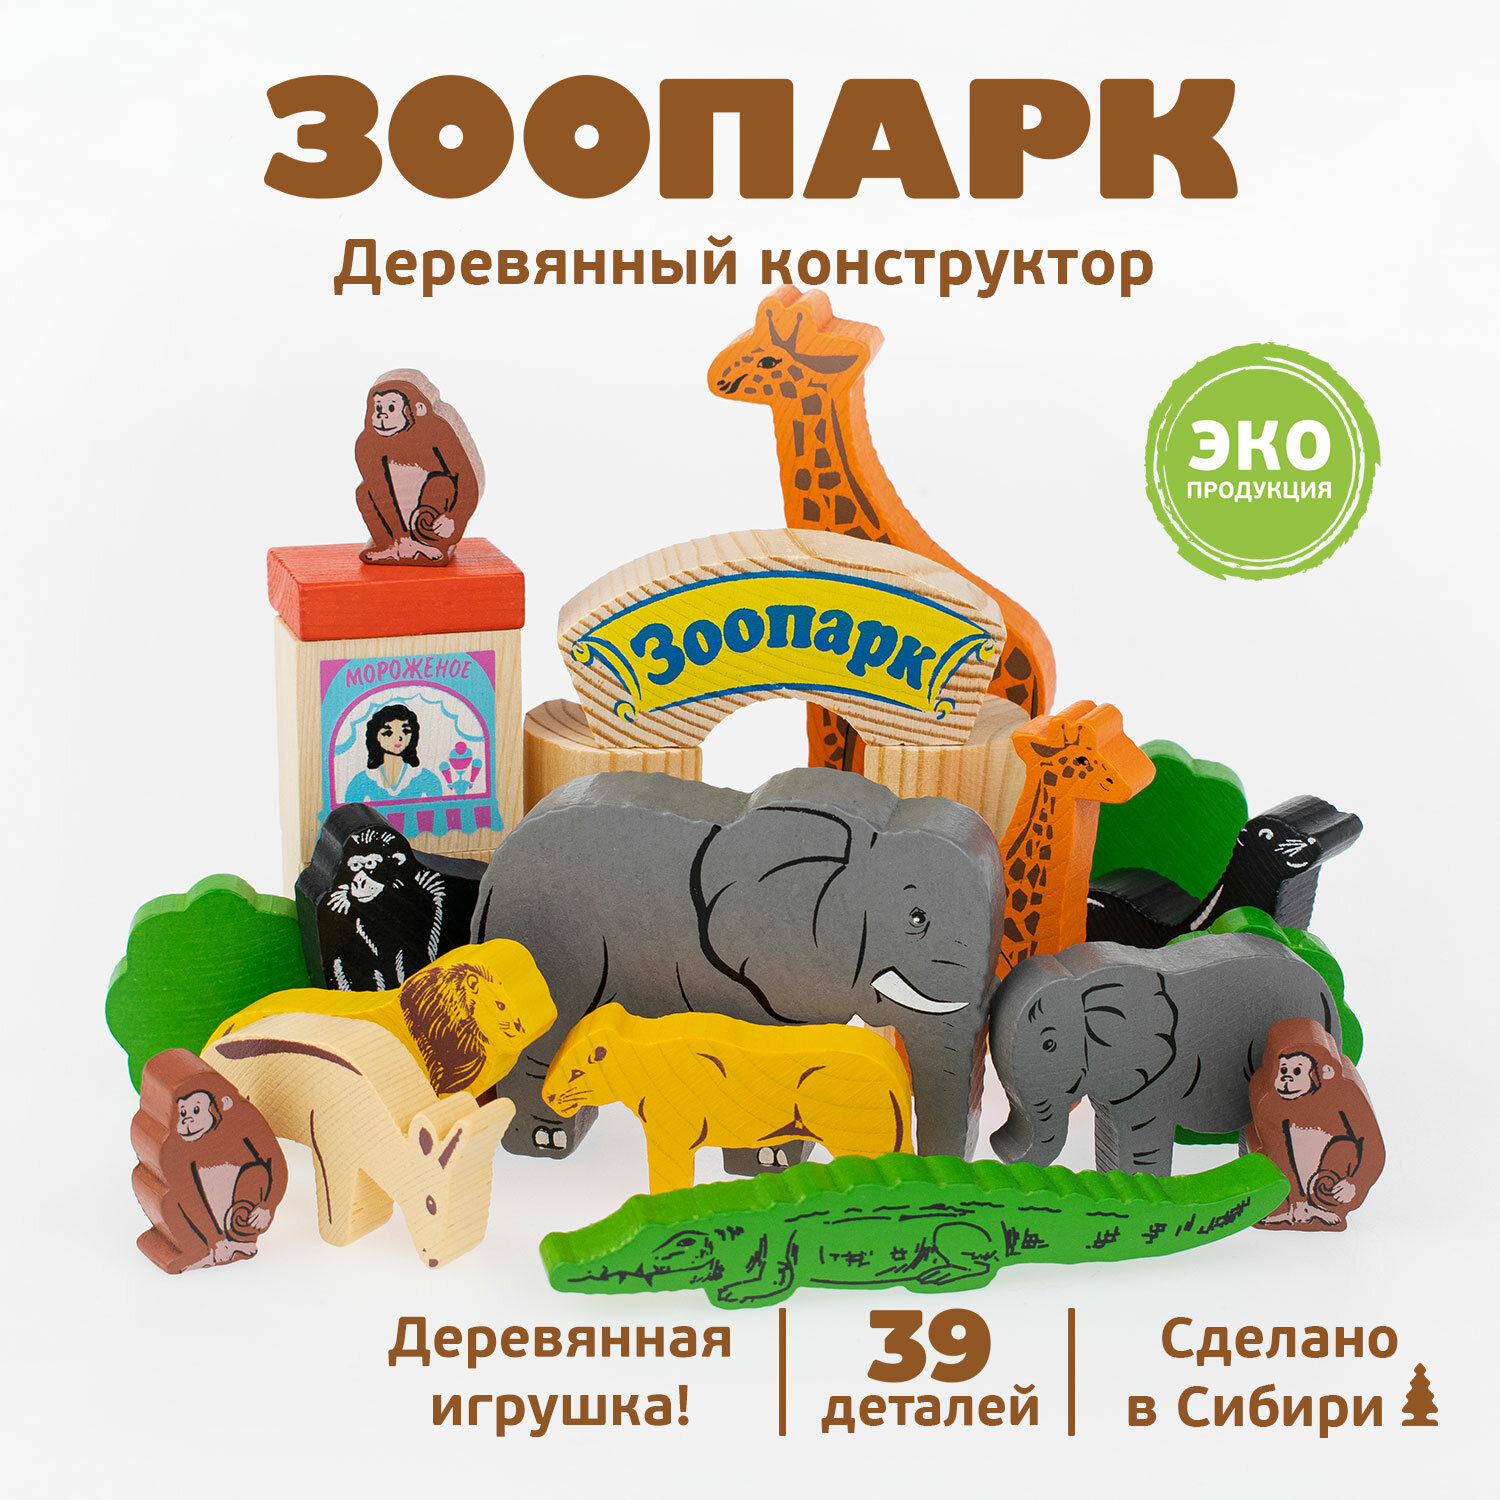 Конструктор деревянный "Зоопарк" Томик 39 д. 7678-5 набор развивающих игрушек